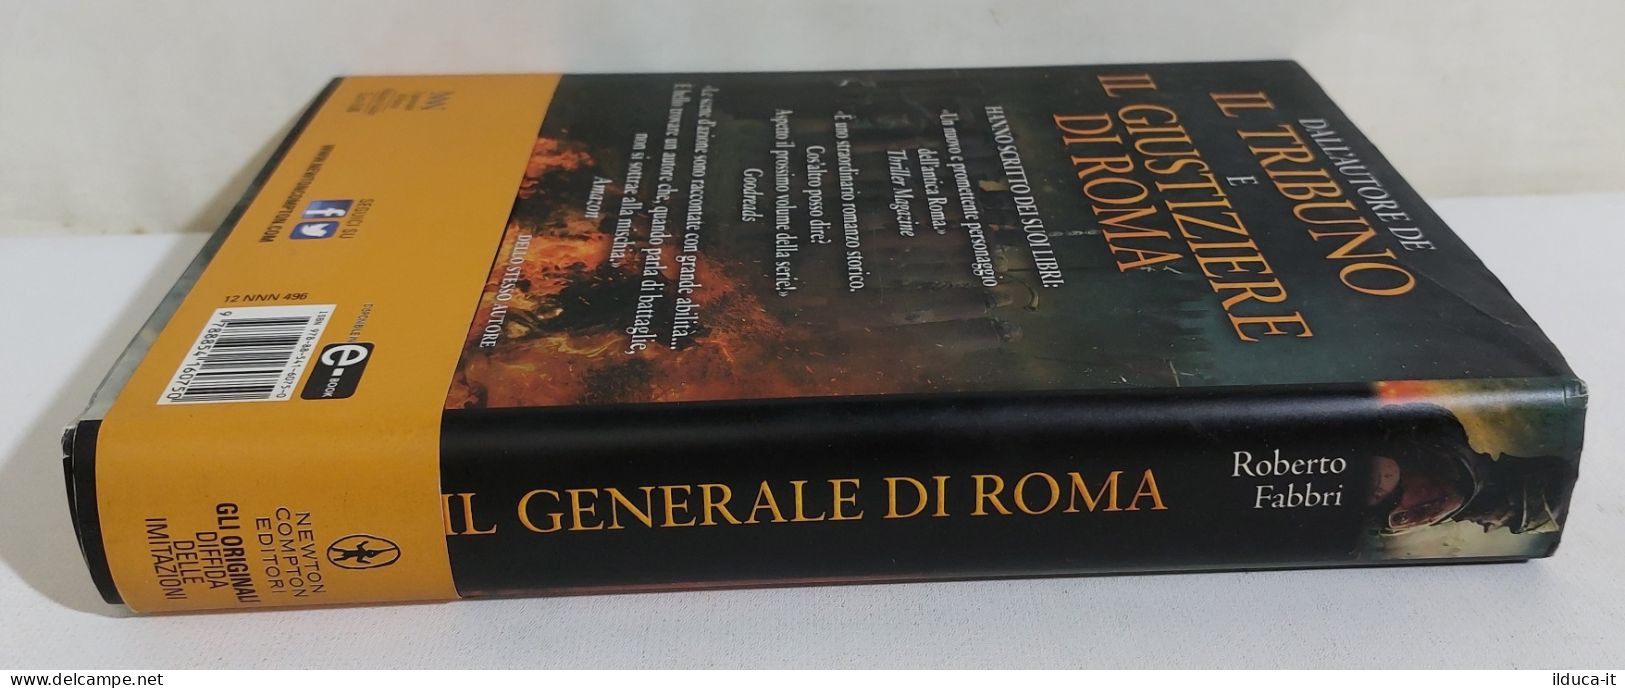 I115898 V Roberto Fabbri - Il Generale Di Roma - Newton Compton 2014 I Ed. - History